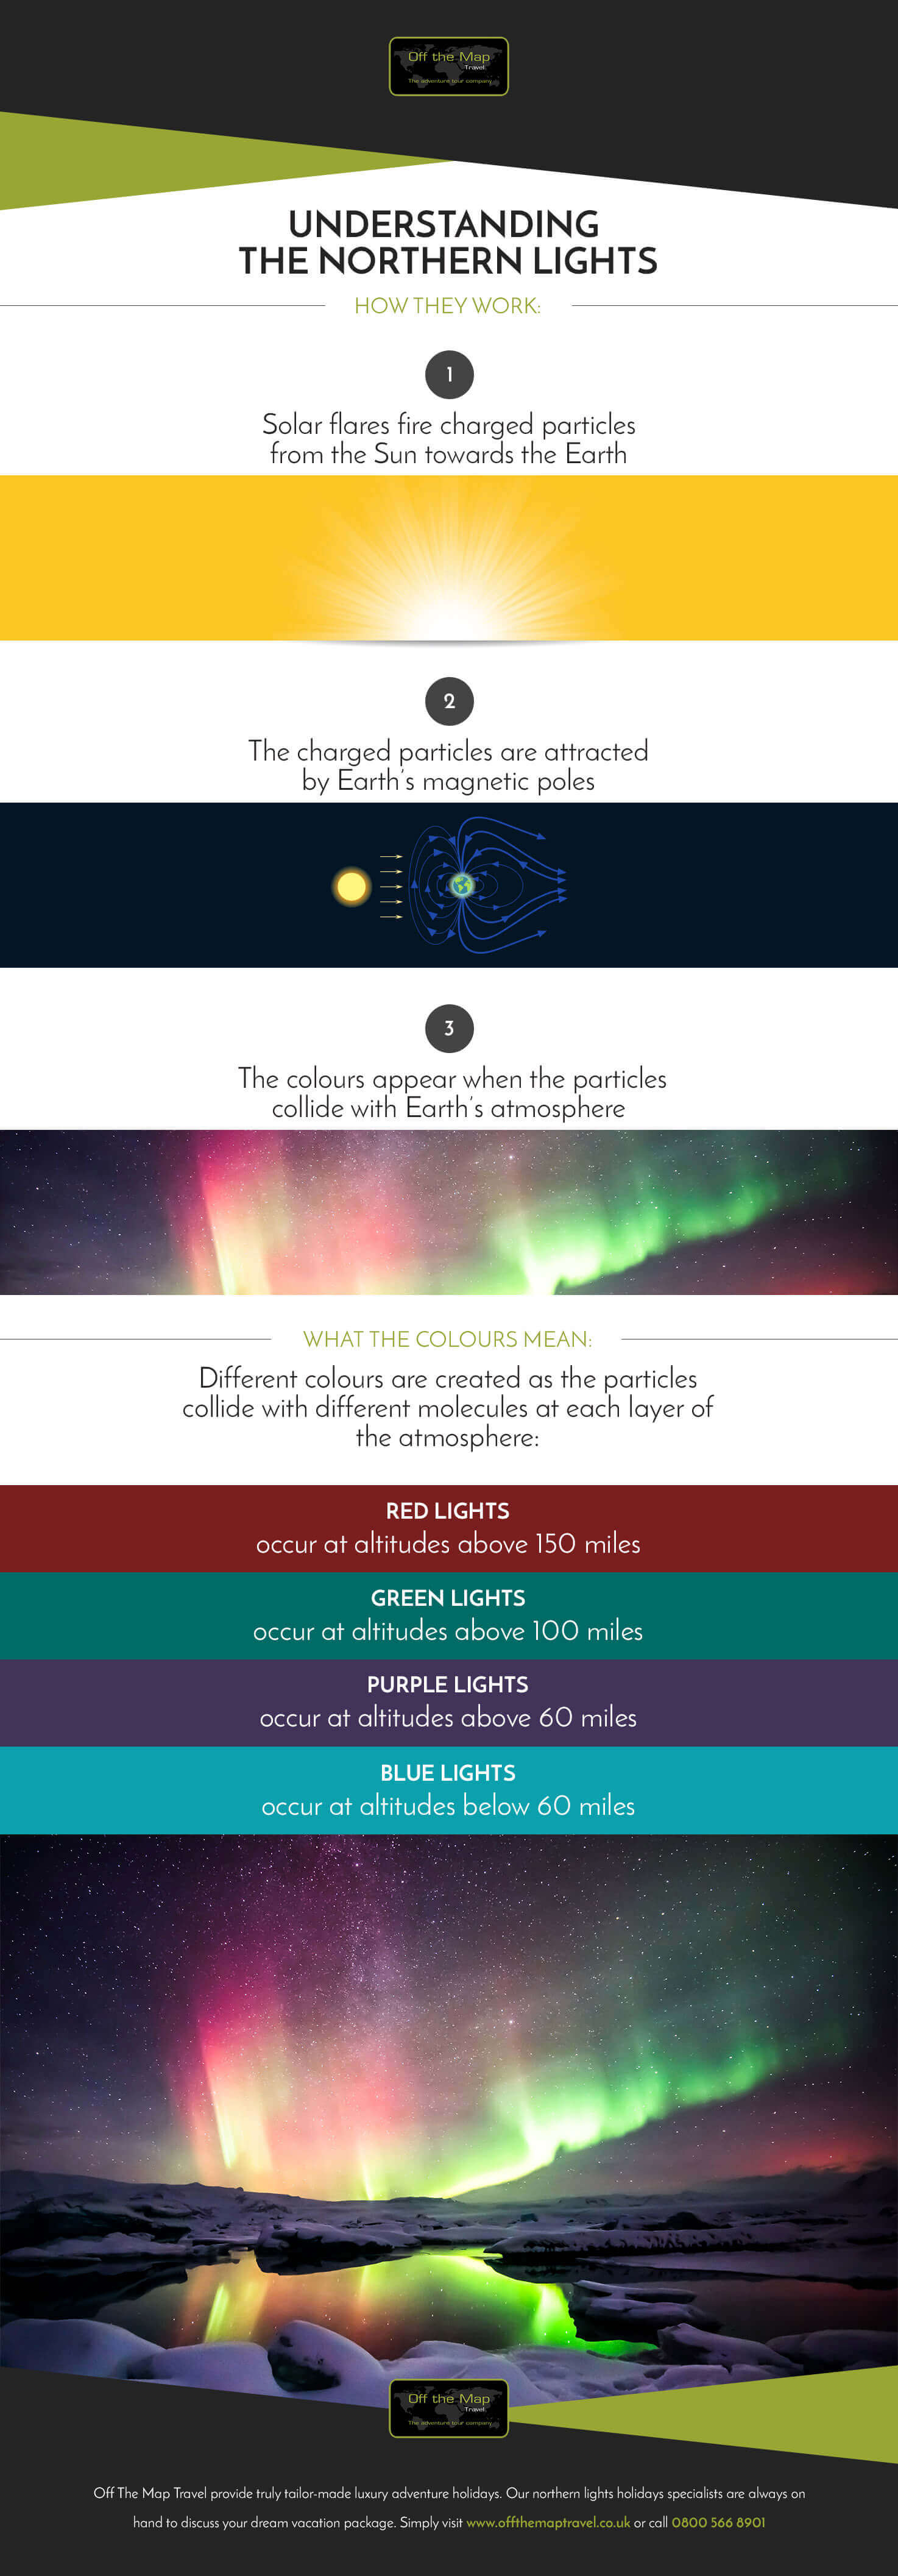 summary of northern lights